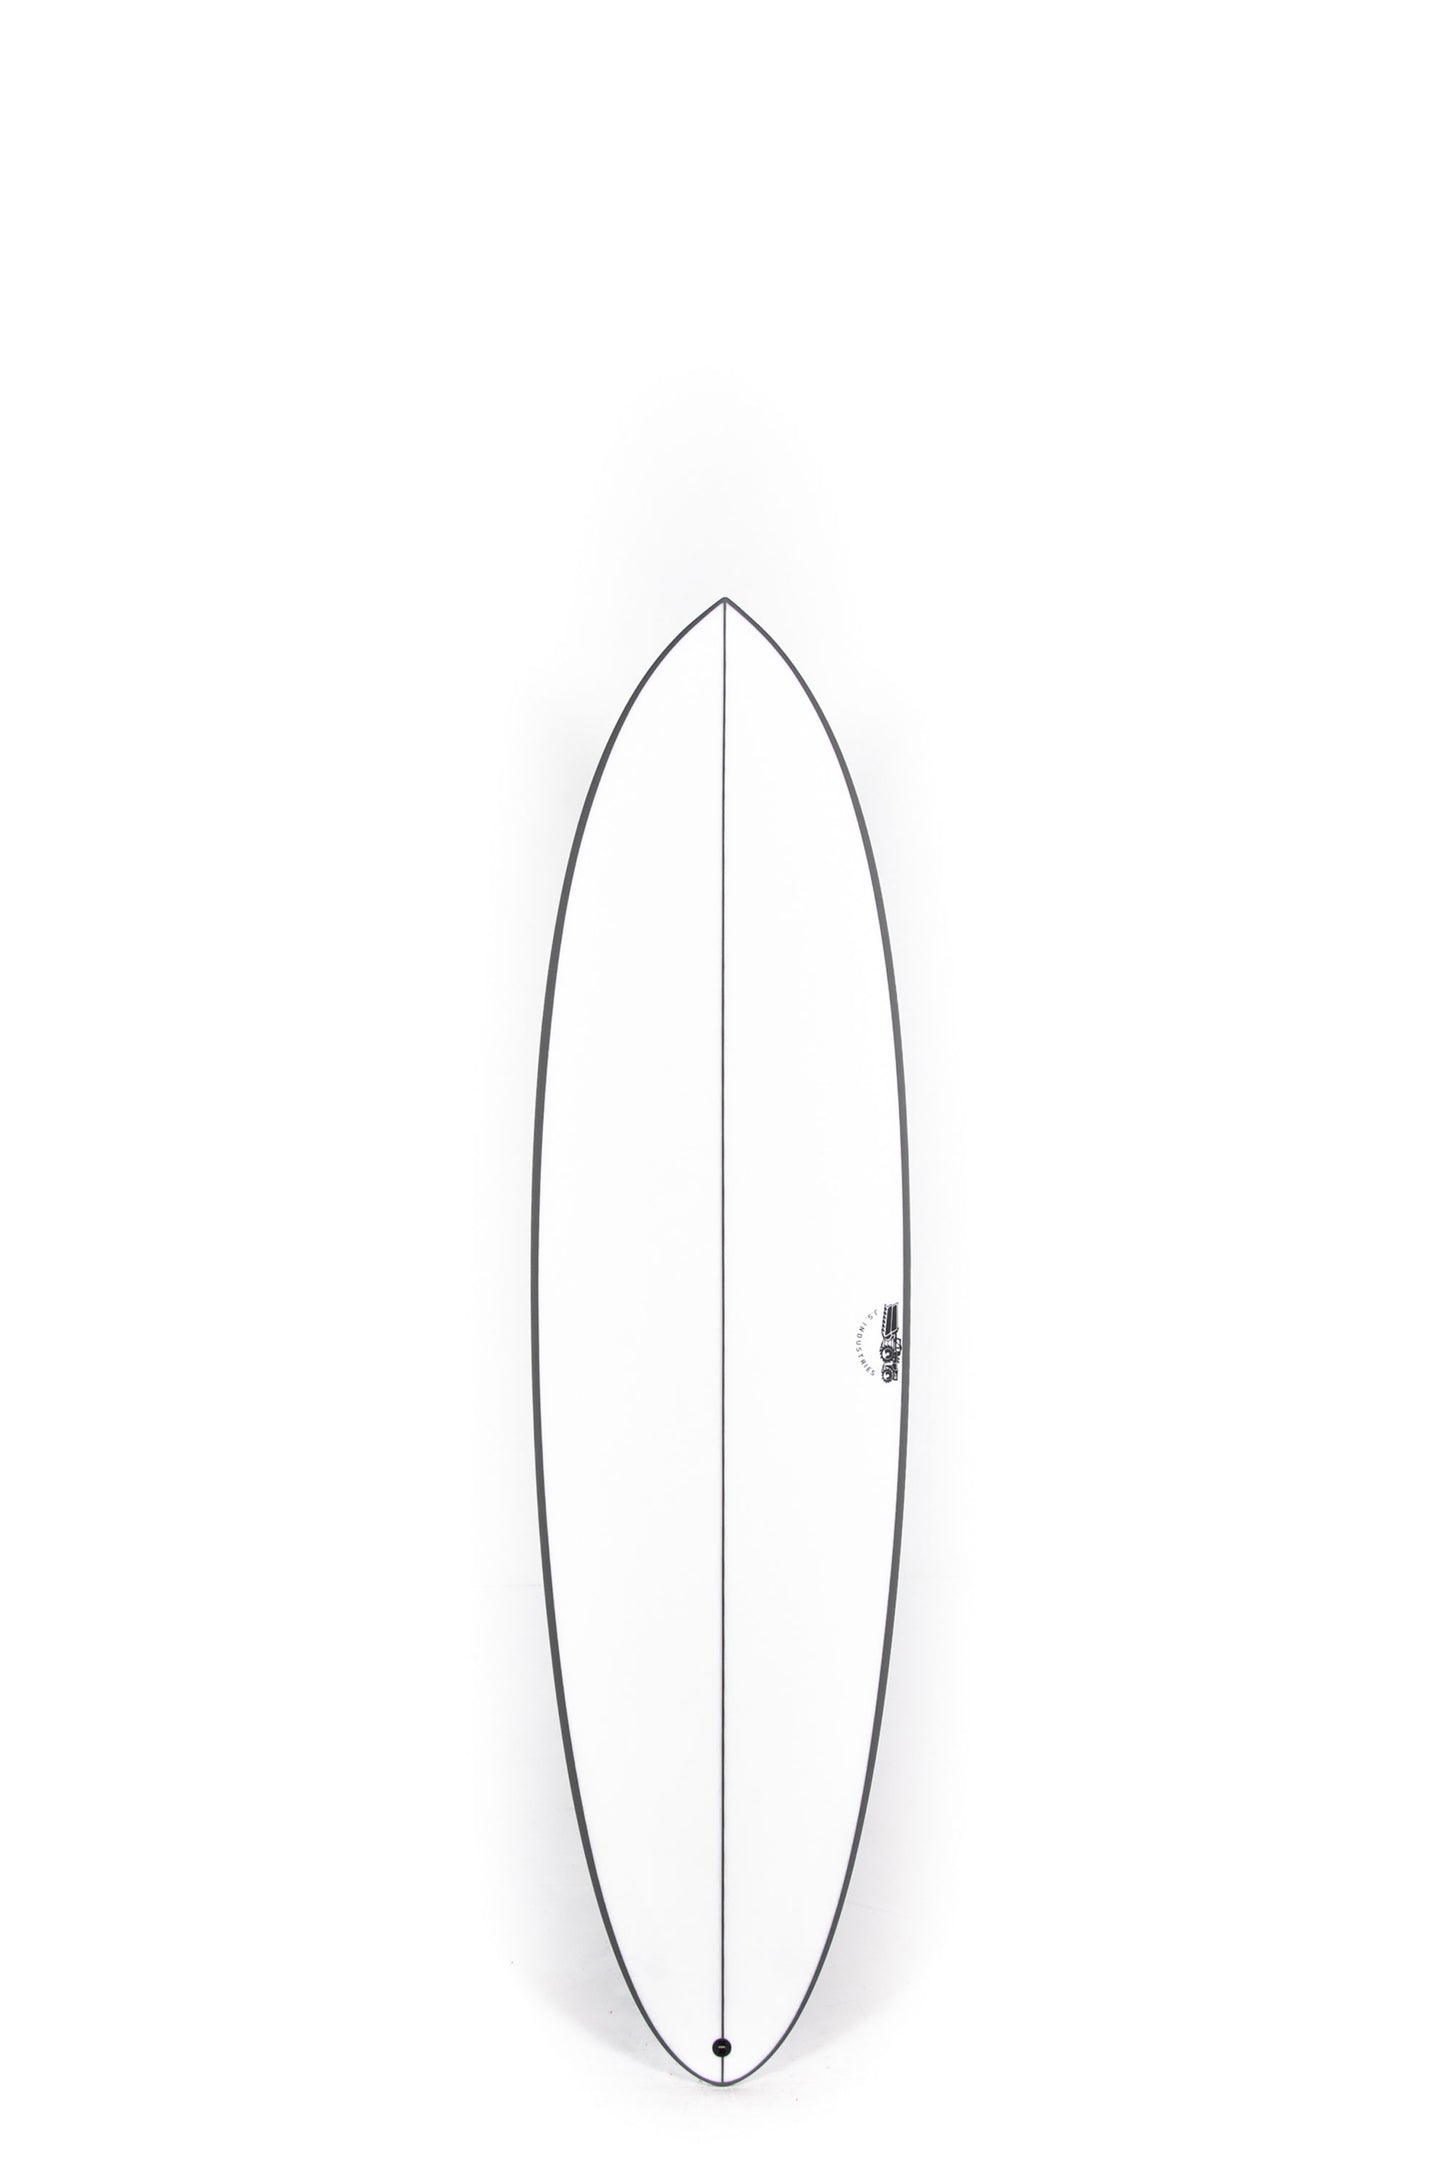 Pukas Surf Shop - JS Surfboards - EL BARON - 6'8" x 20 1/2 x 2 5/8 x 40L. - JPEB68